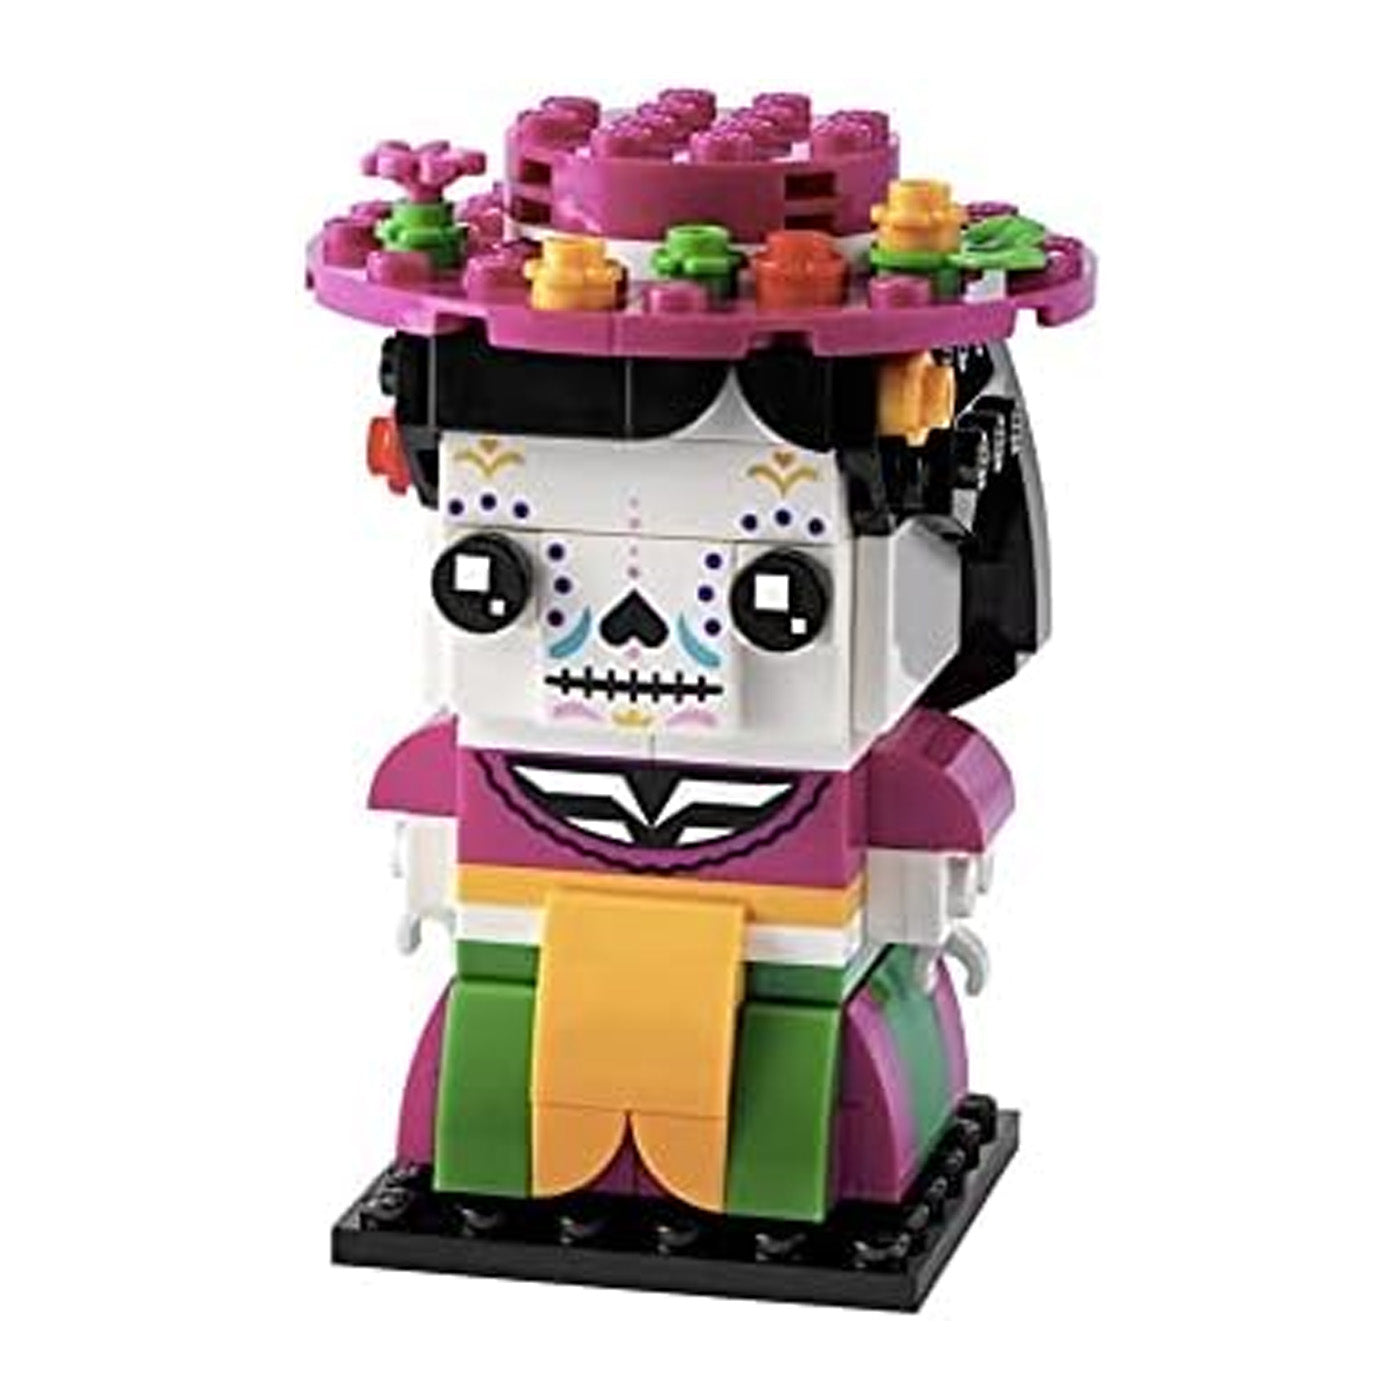 LEGO Brick Headz: La Catrina 149 Set 40492